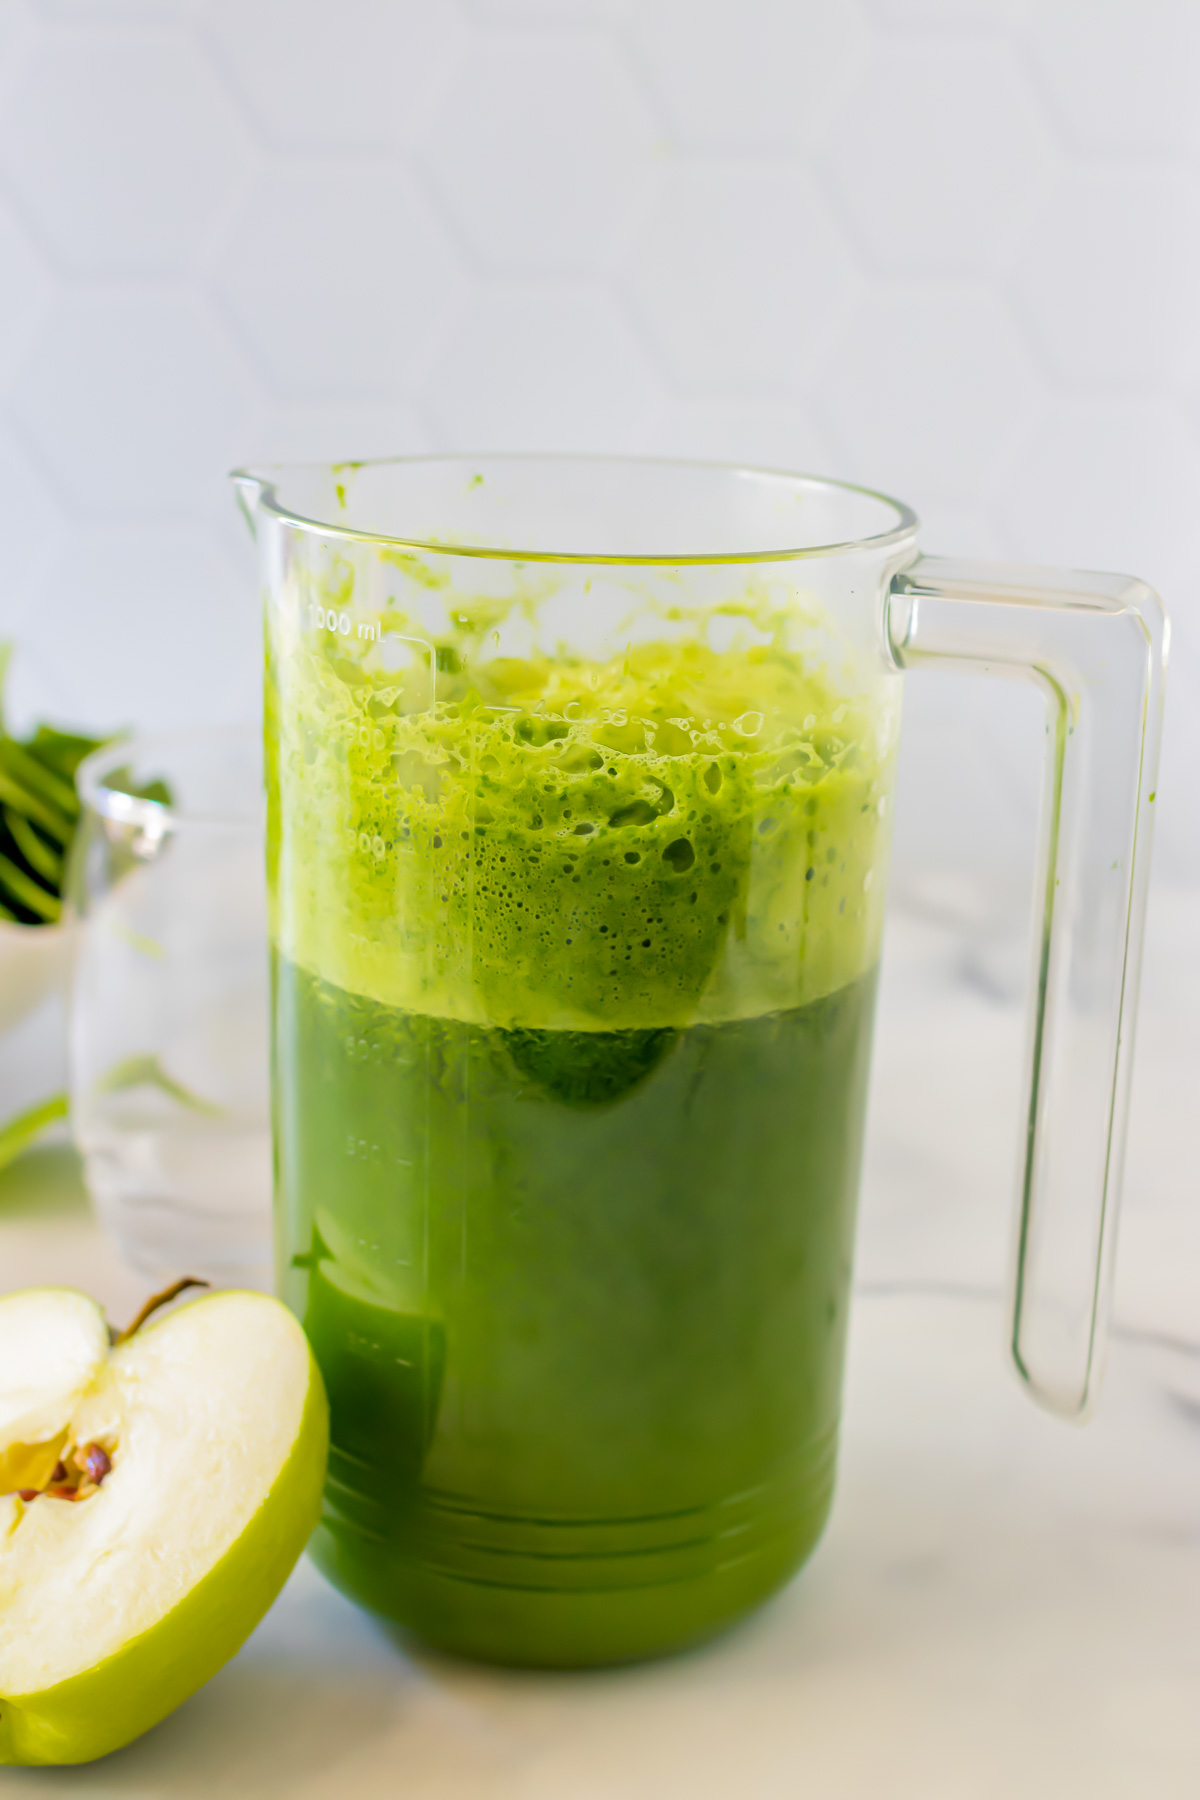 Green juice in a jug.